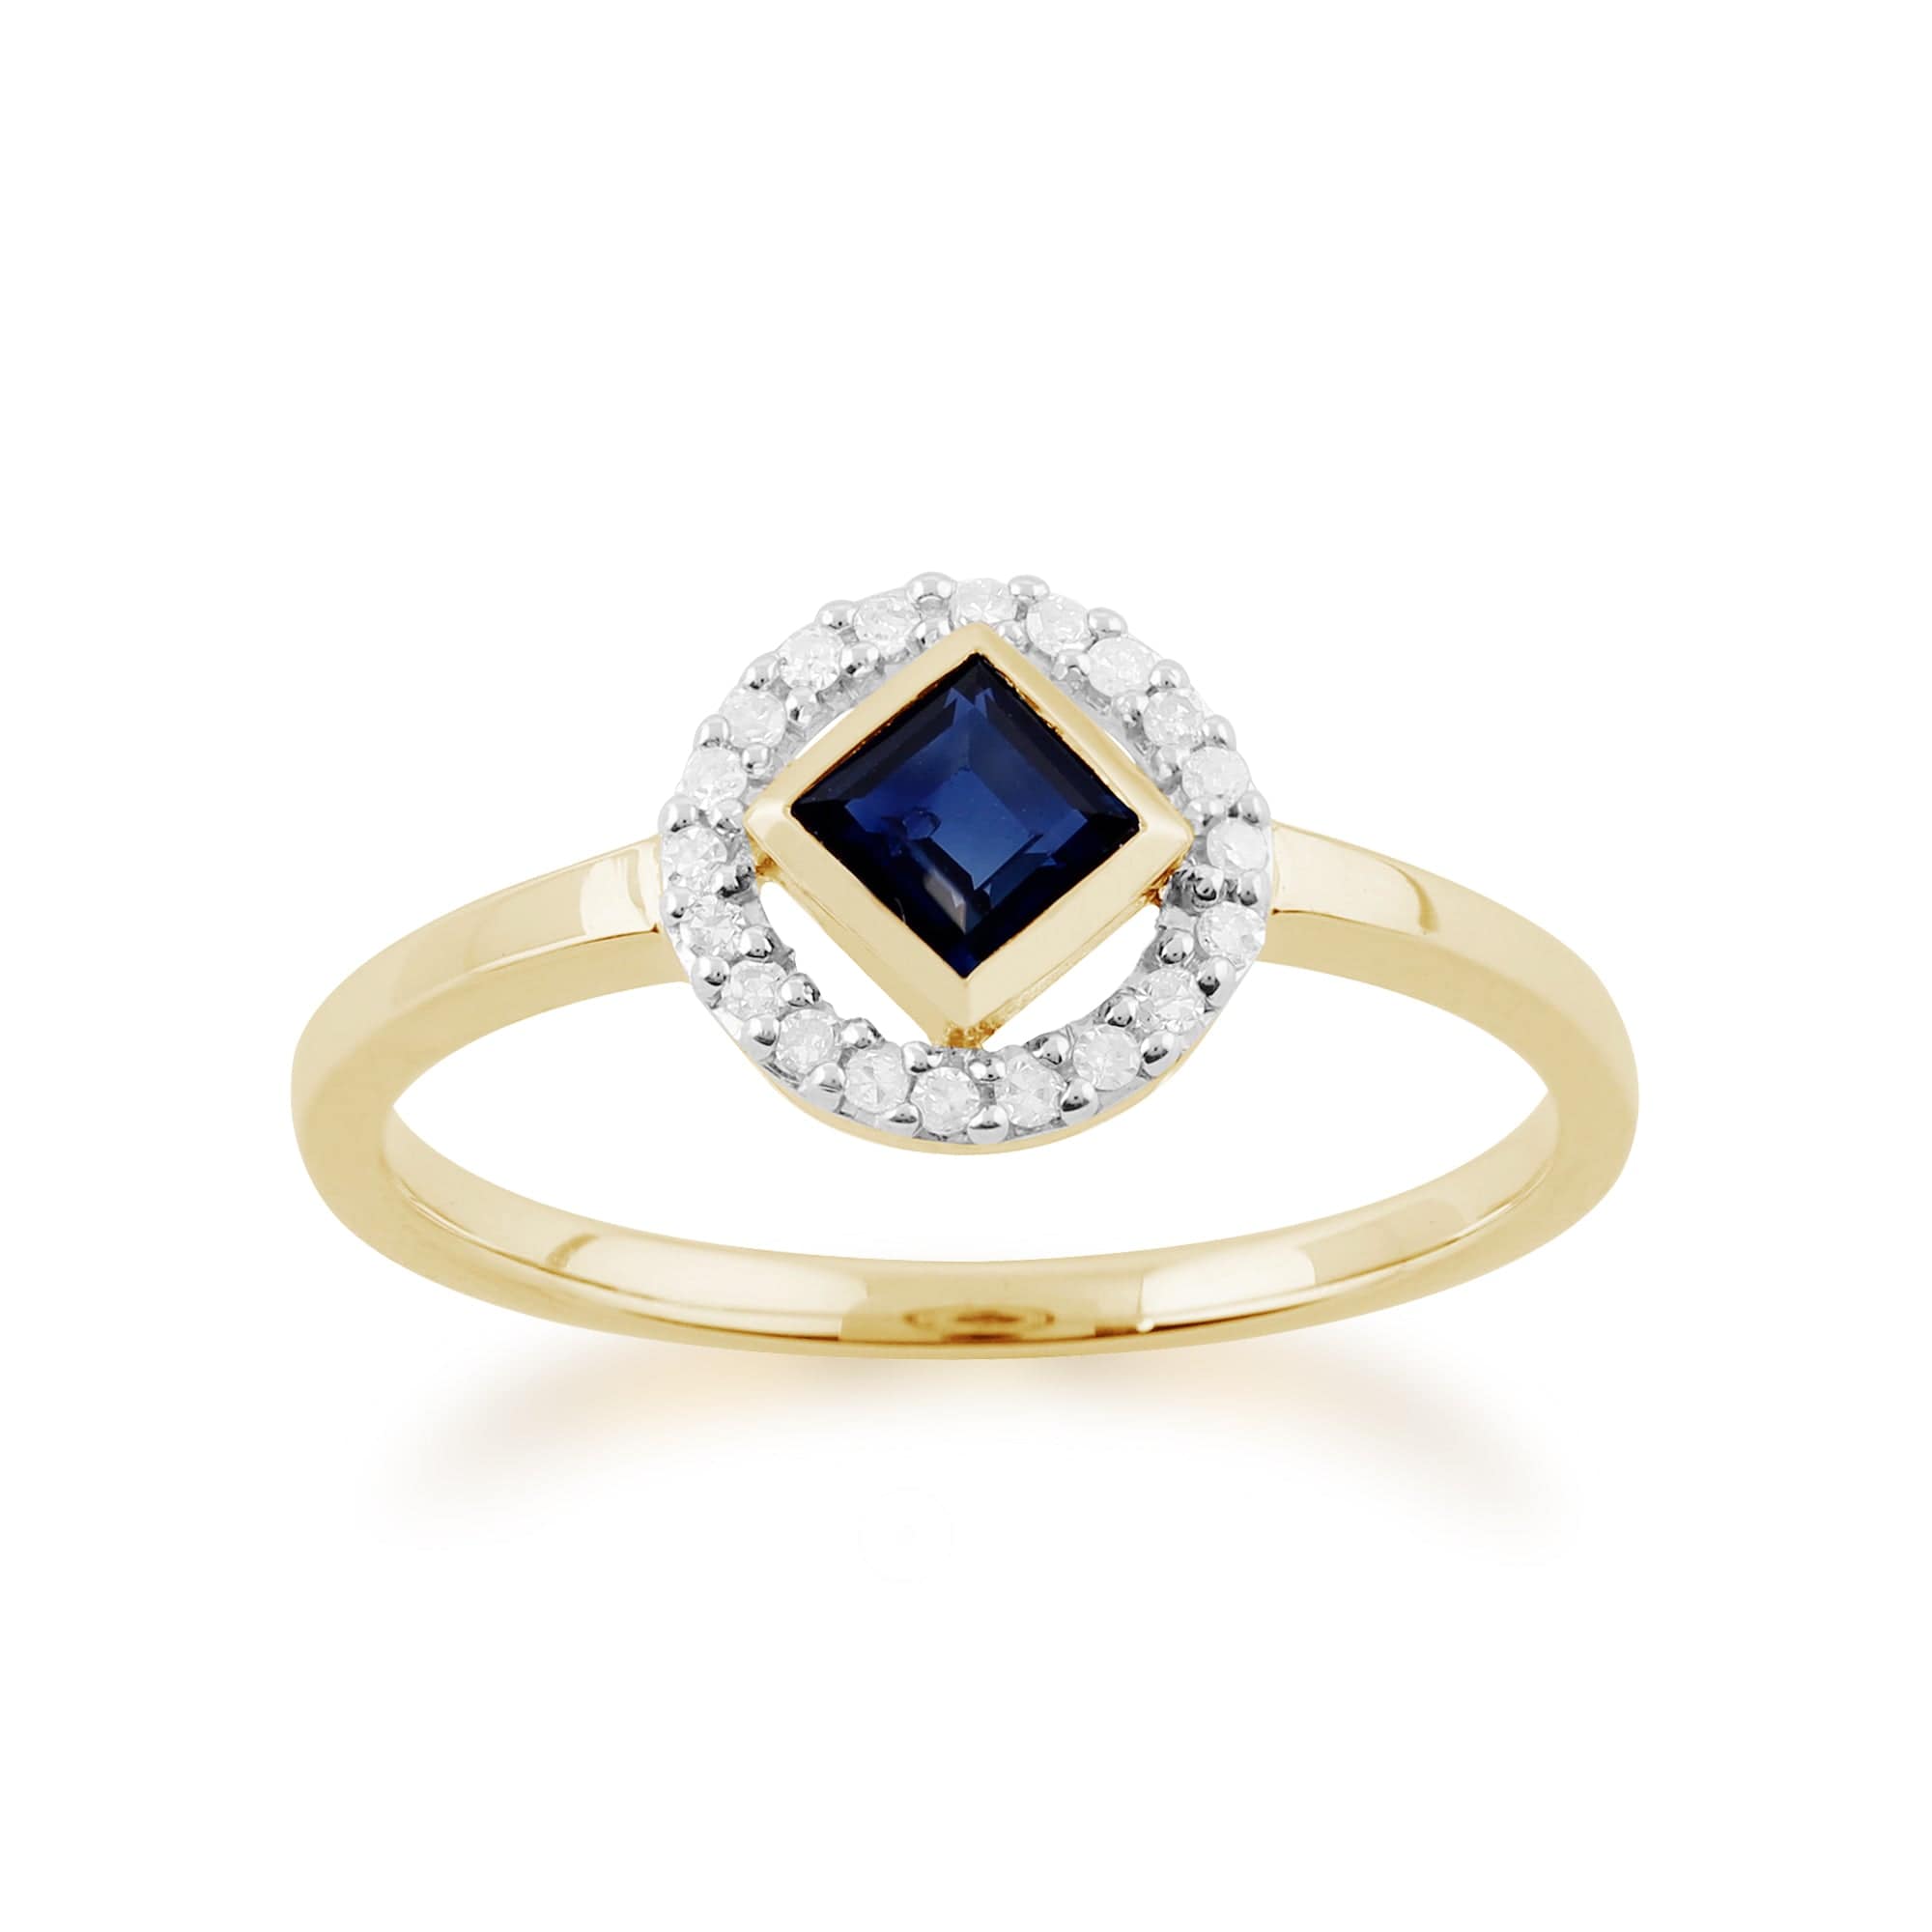 Gemondo 9ct Yellow Gold 0.34ct Sapphire & Diamond Ring Image 1